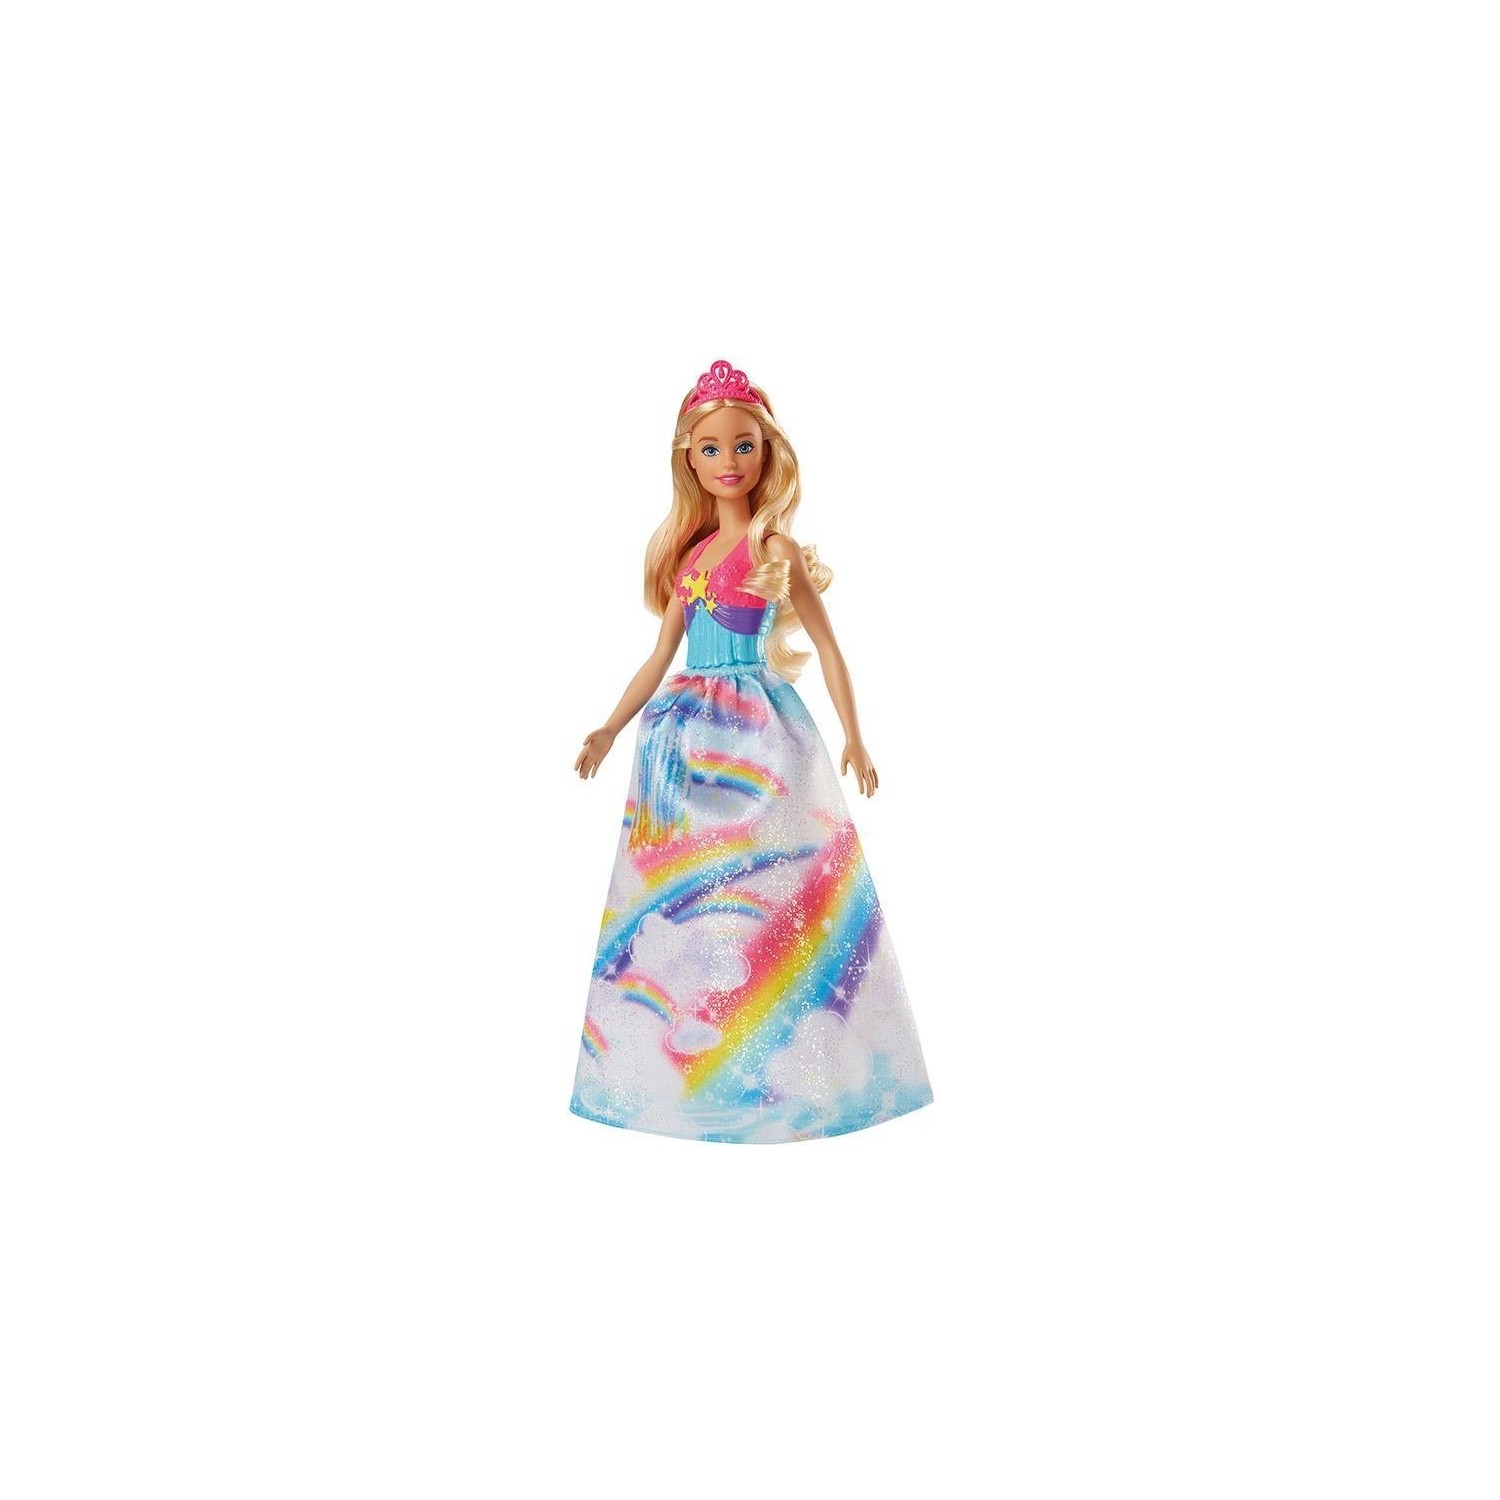 Кукла Barbie Dreamtopia Princess Dolls Fjc94 barbie mermaid playset dreamtopia